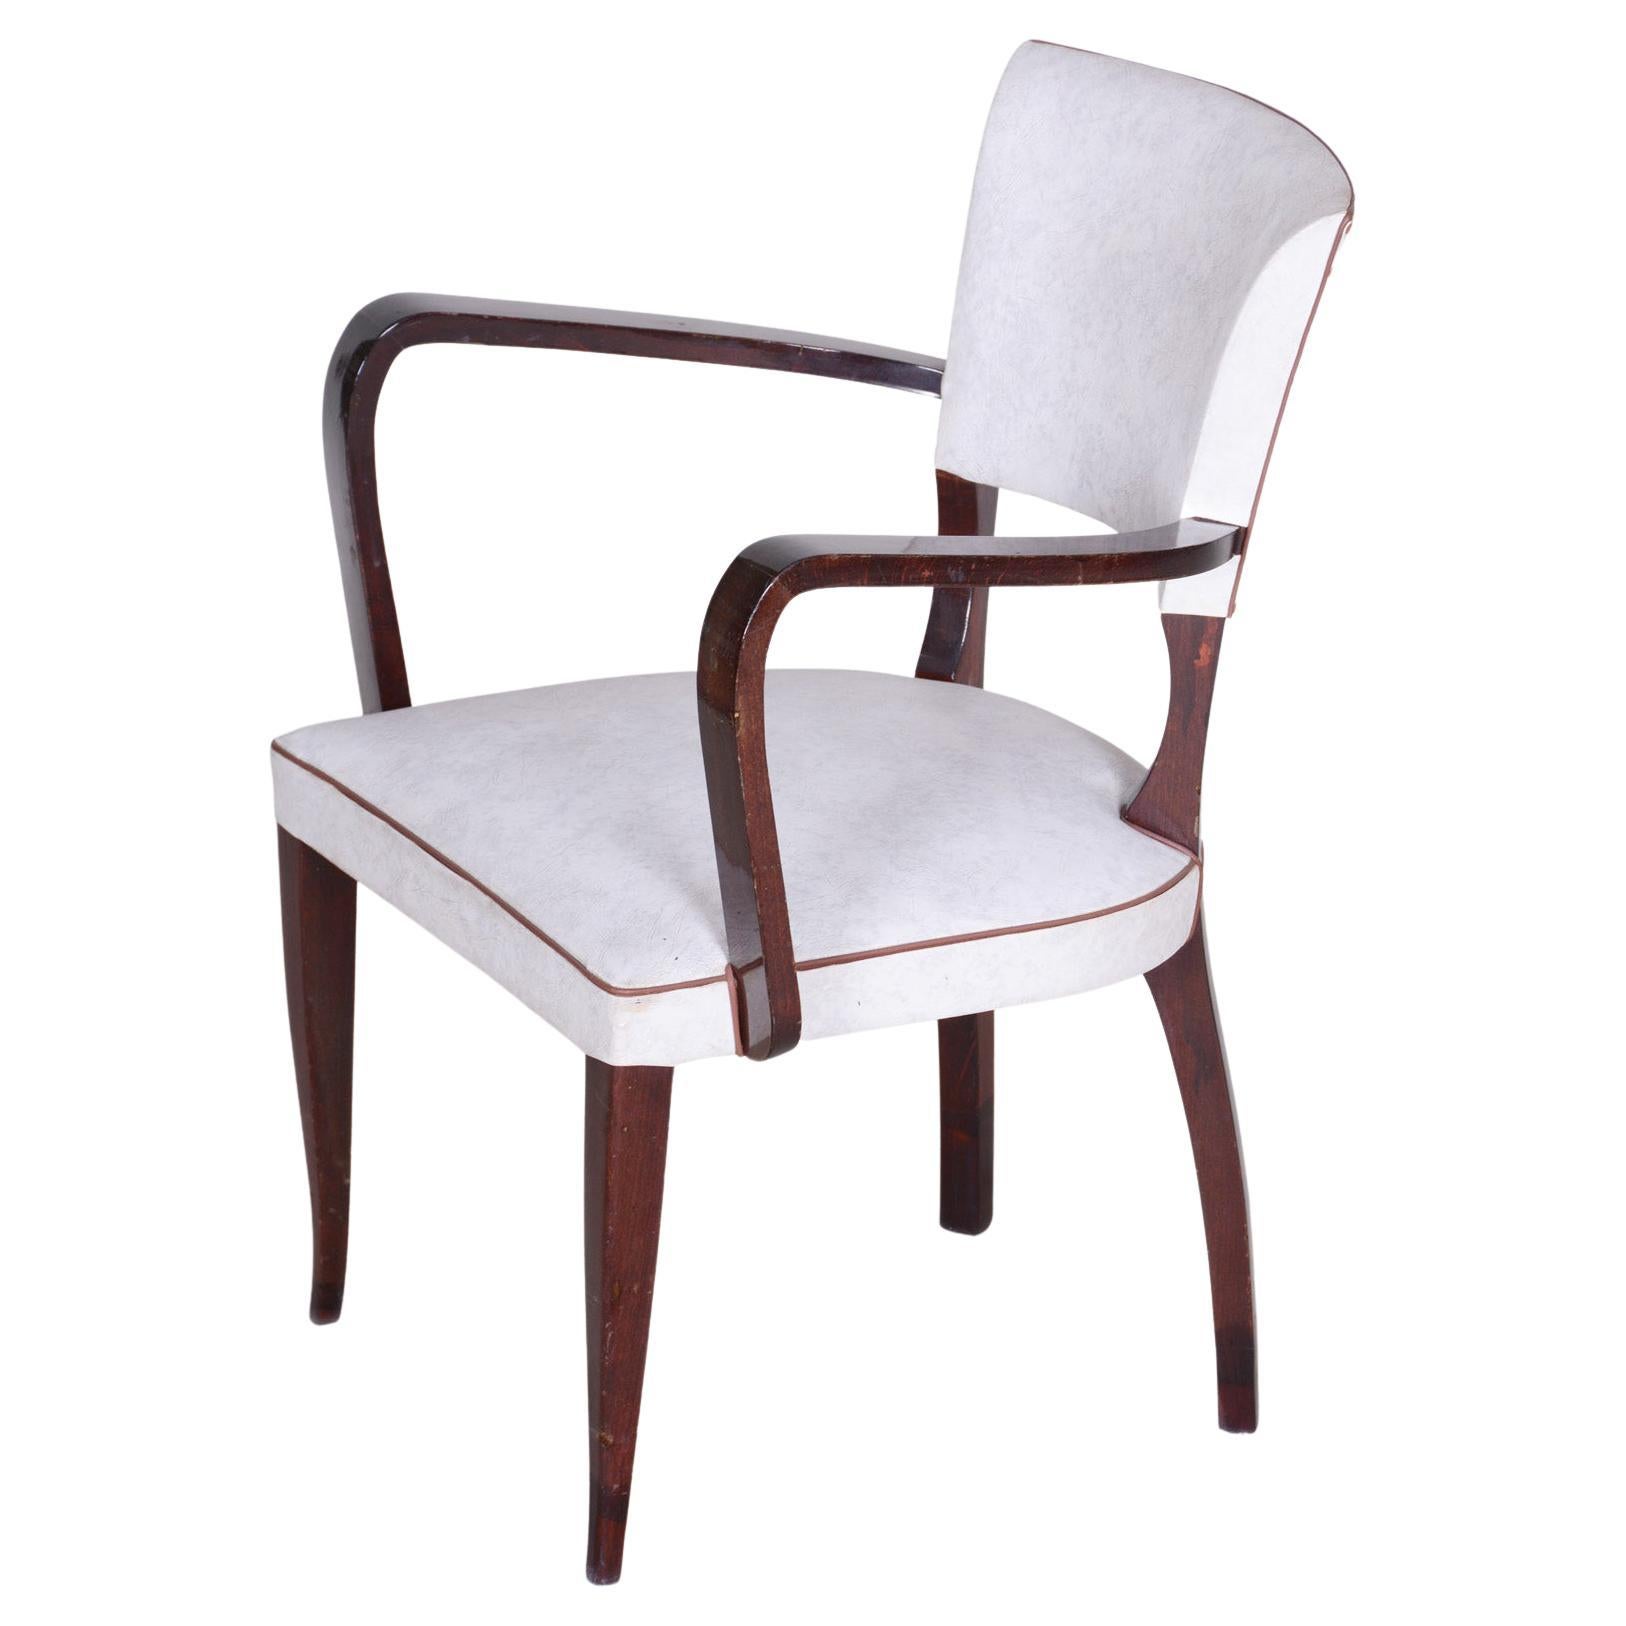 Restaurierter weißer Sessel, hergestellt in Frankreich 1930, gepolstert mit künstlichem Leder